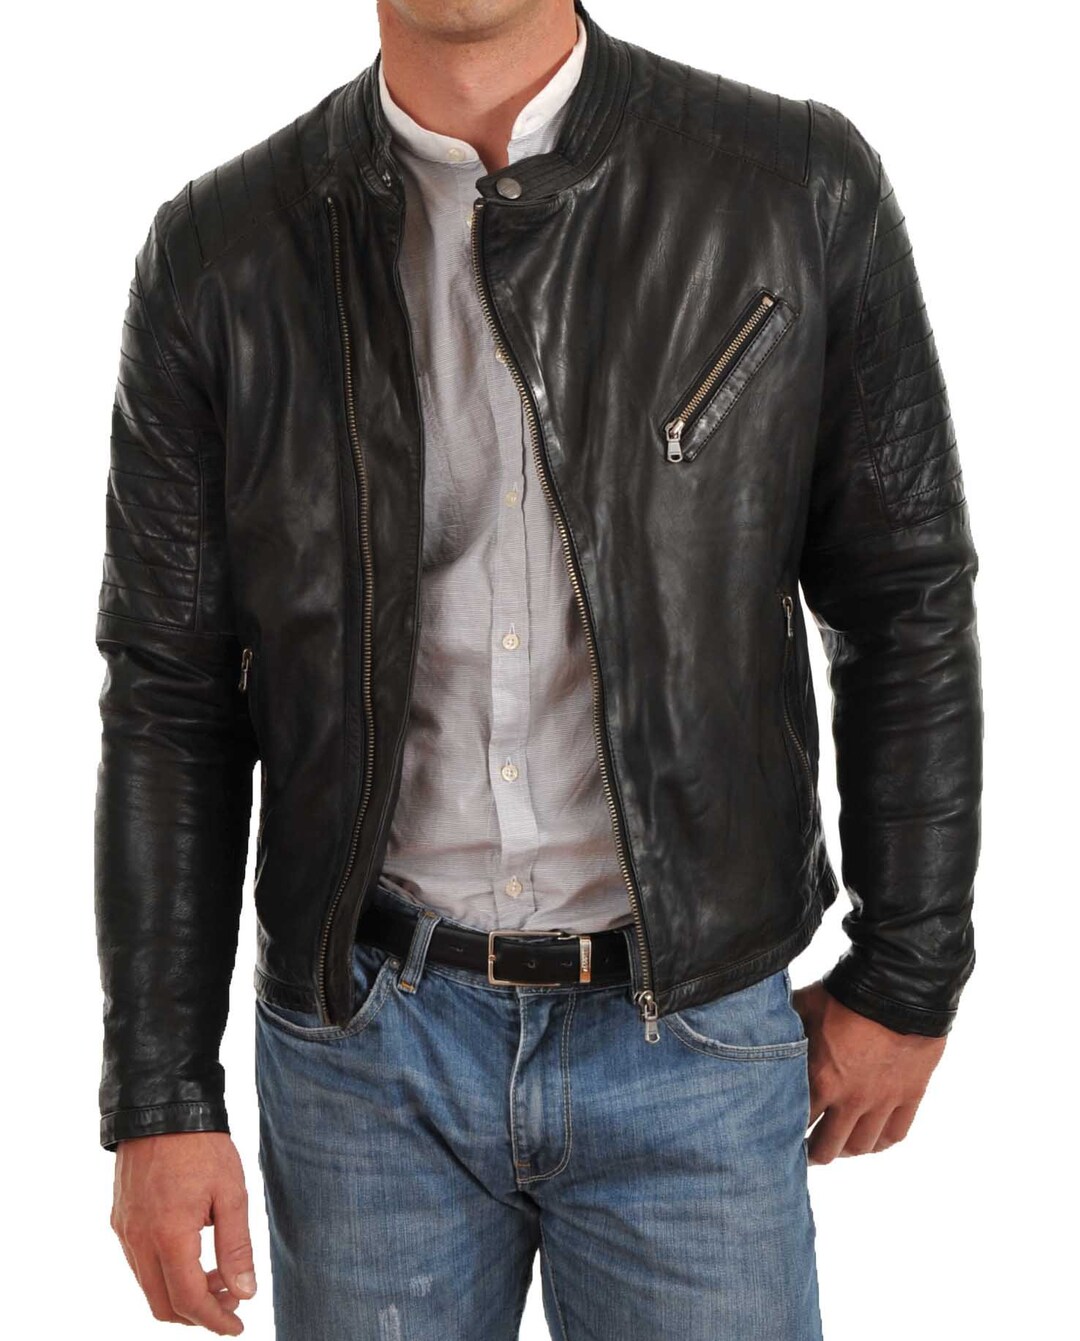 Men's Leather Jacket Stylish Handmade Motorcycle Bomber - Etsy